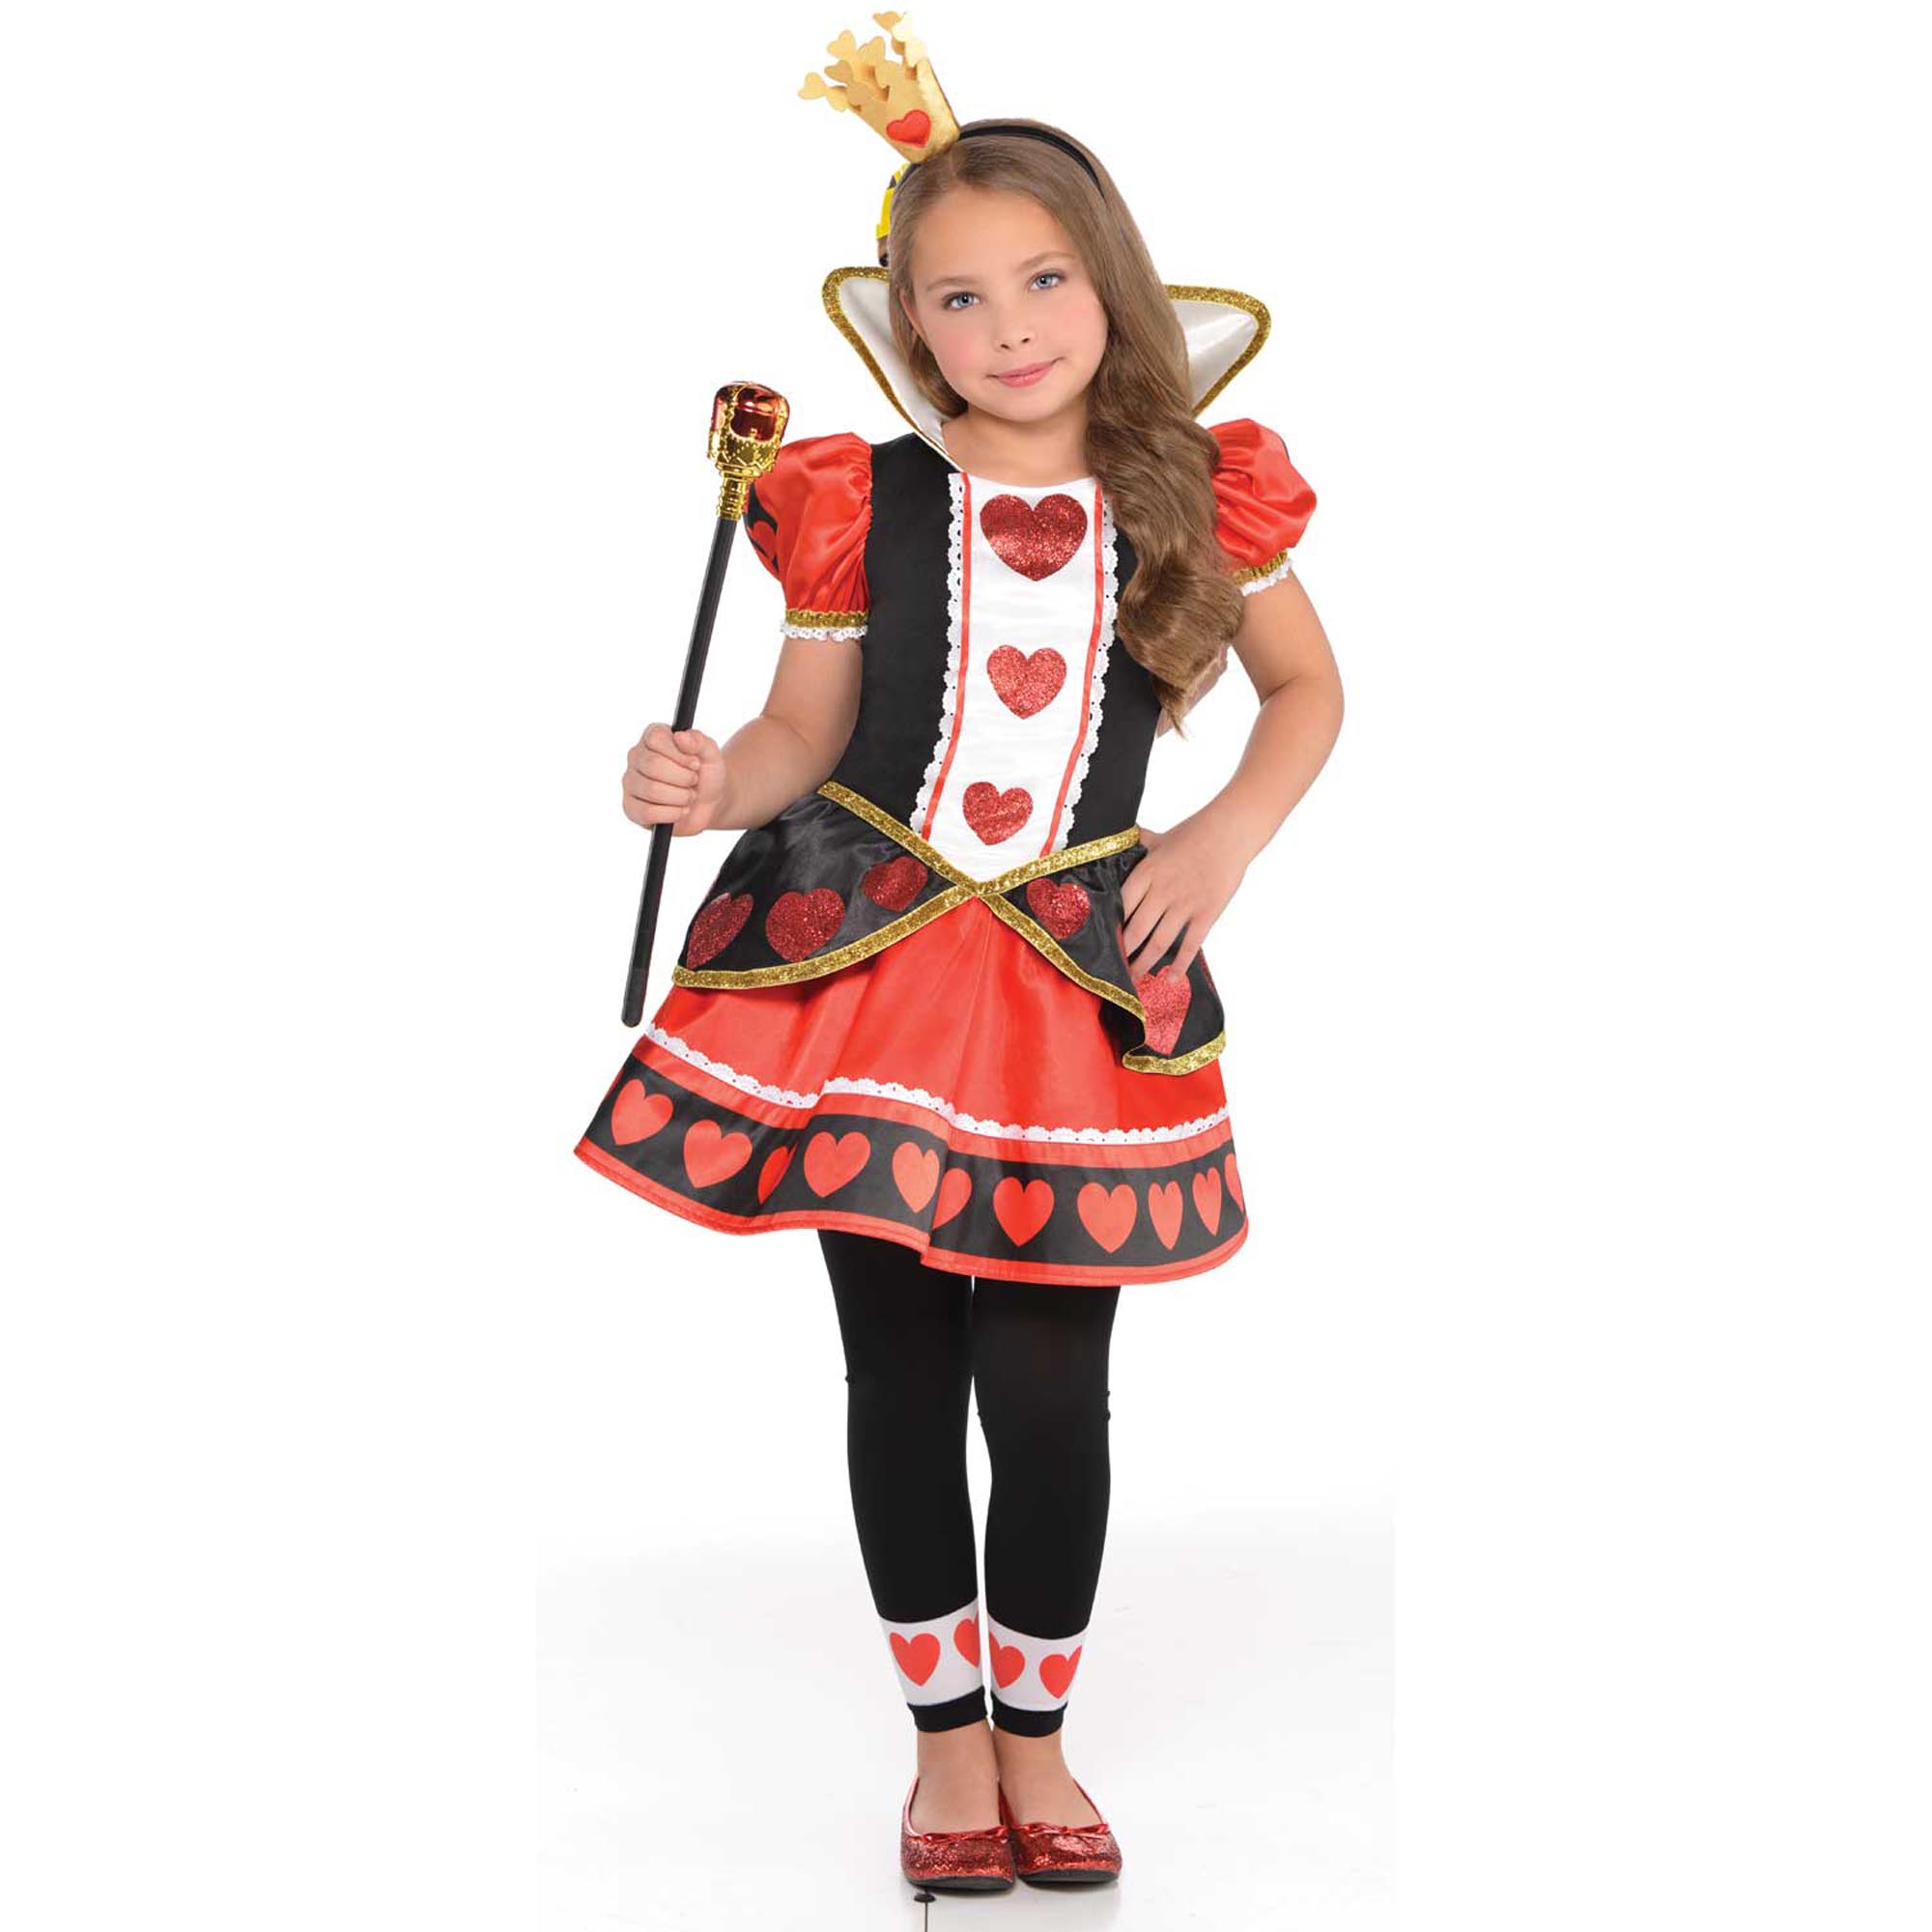 Queen of Hearts Children's Fancy Dress Costume